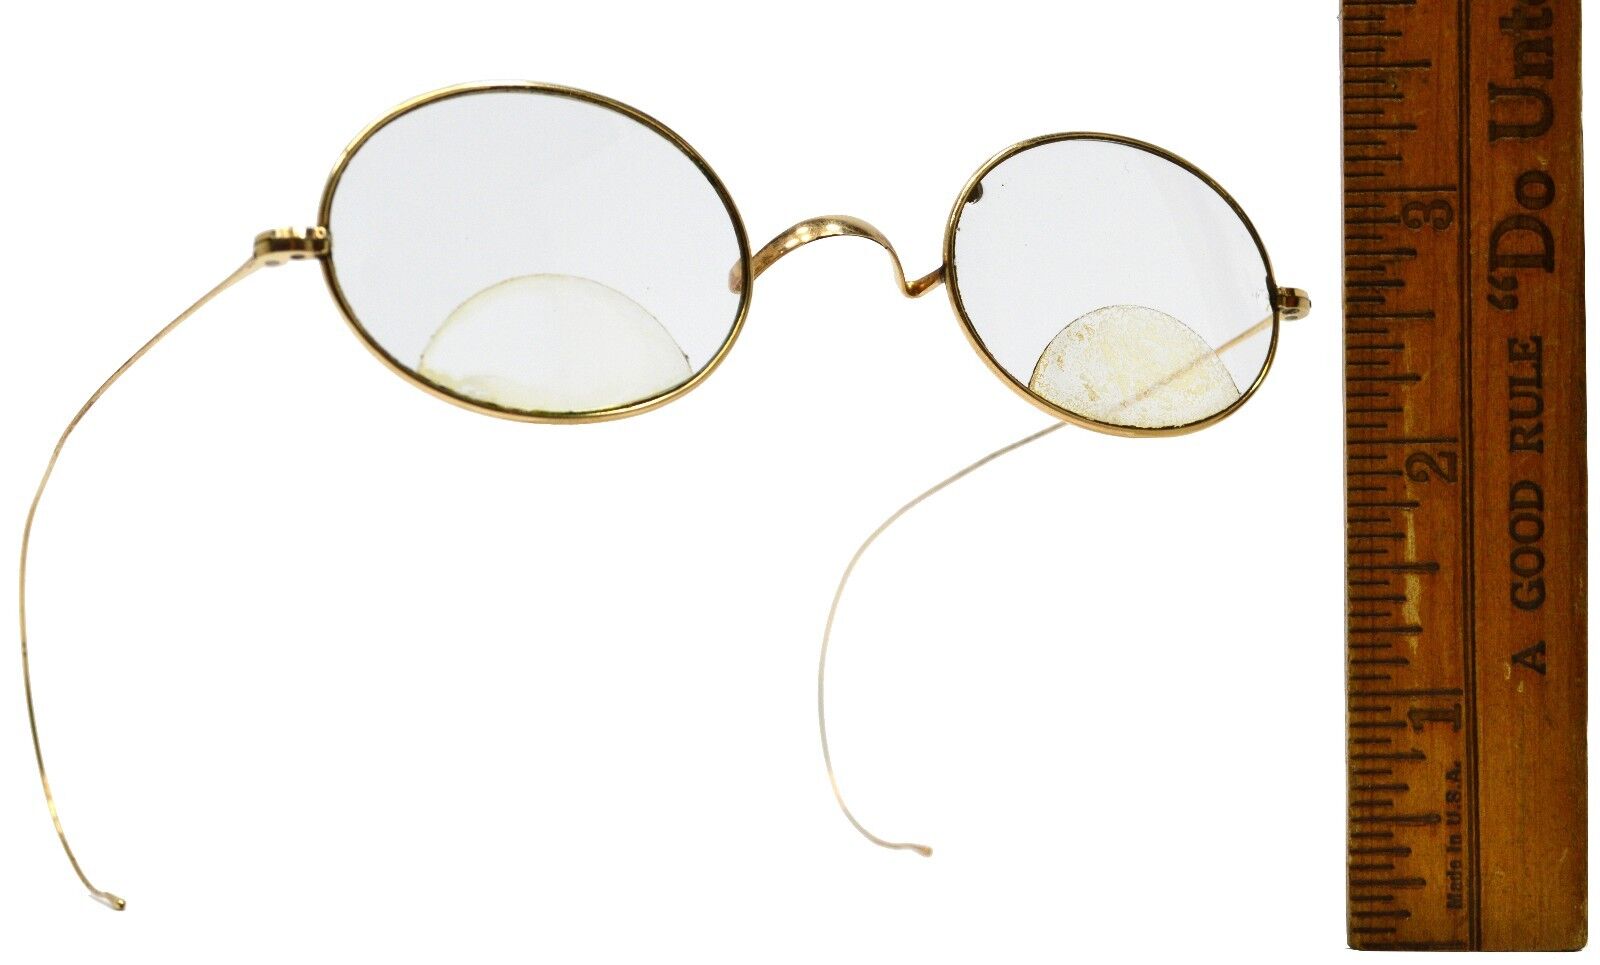 Vintage GOLD FILLED EYEGLASSES Prescription Bifocals CF or CE? WIRE FRAMES Oval